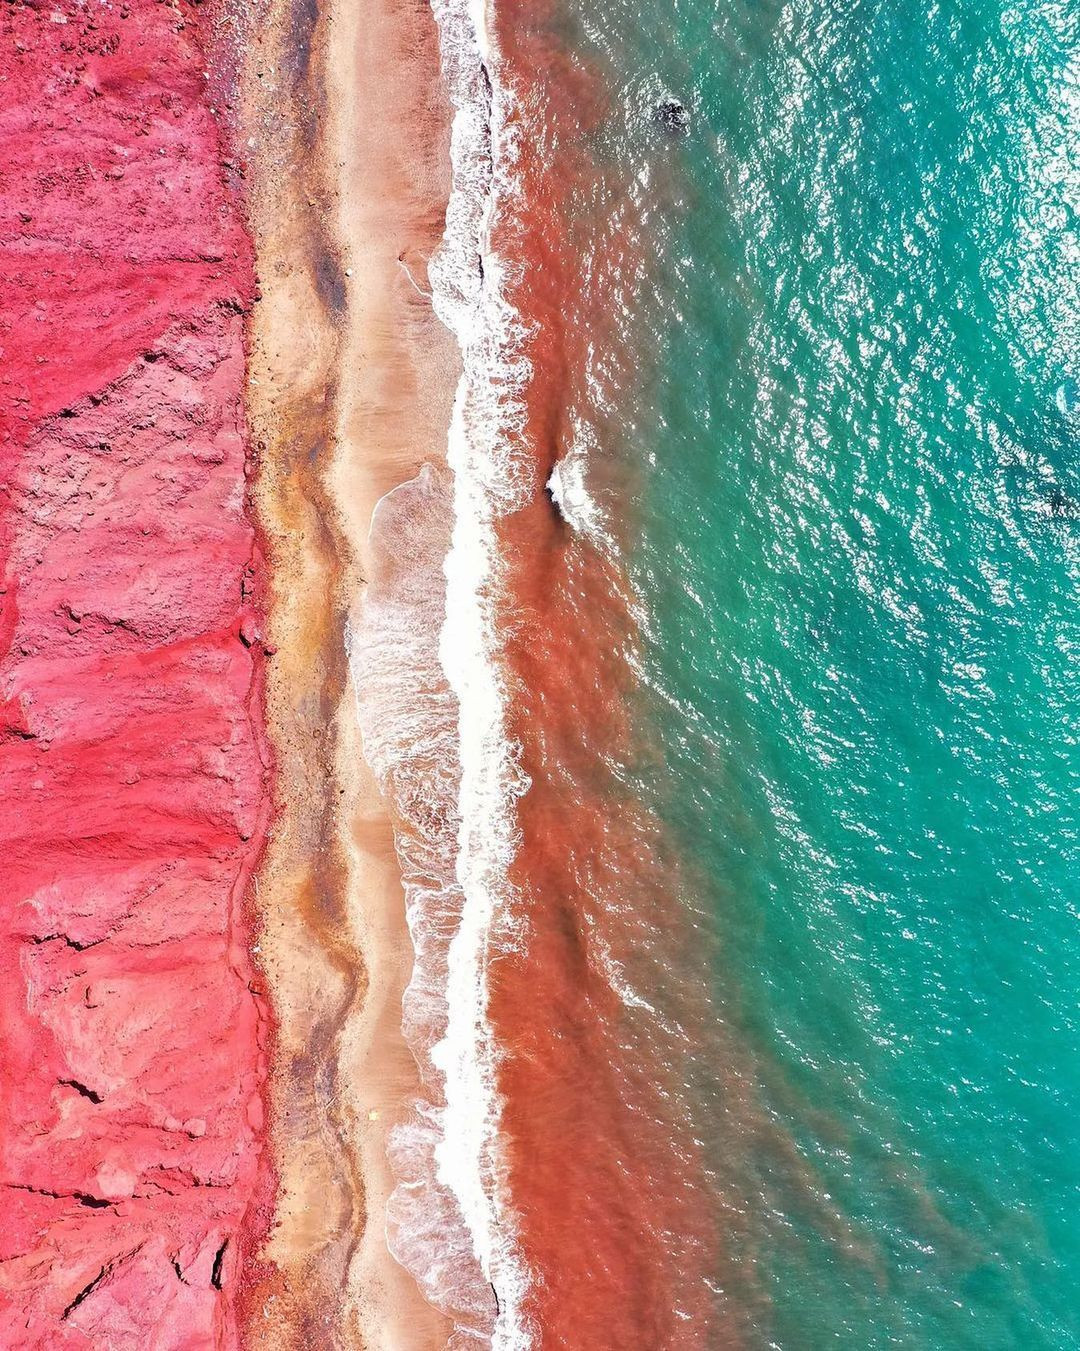 Hòn đảo độc nhất hành tinh với bờ biển đỏ như máu, cát có thể chế thành món ăn - 3